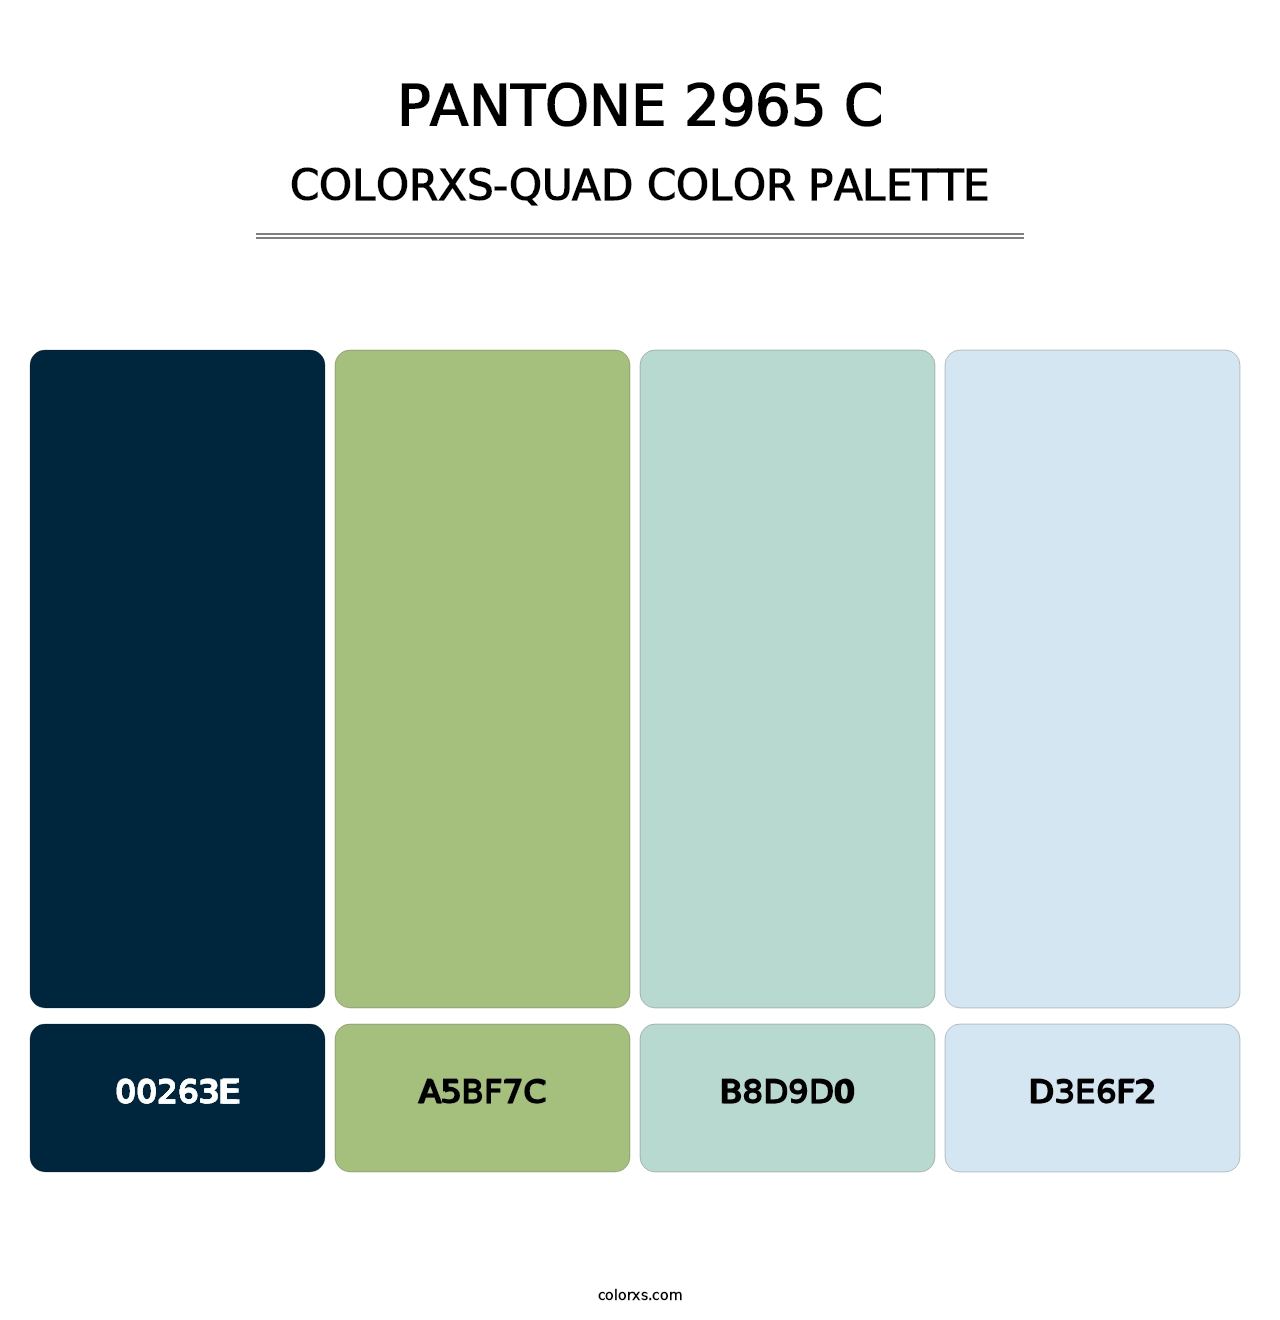 PANTONE 2965 C - Colorxs Quad Palette